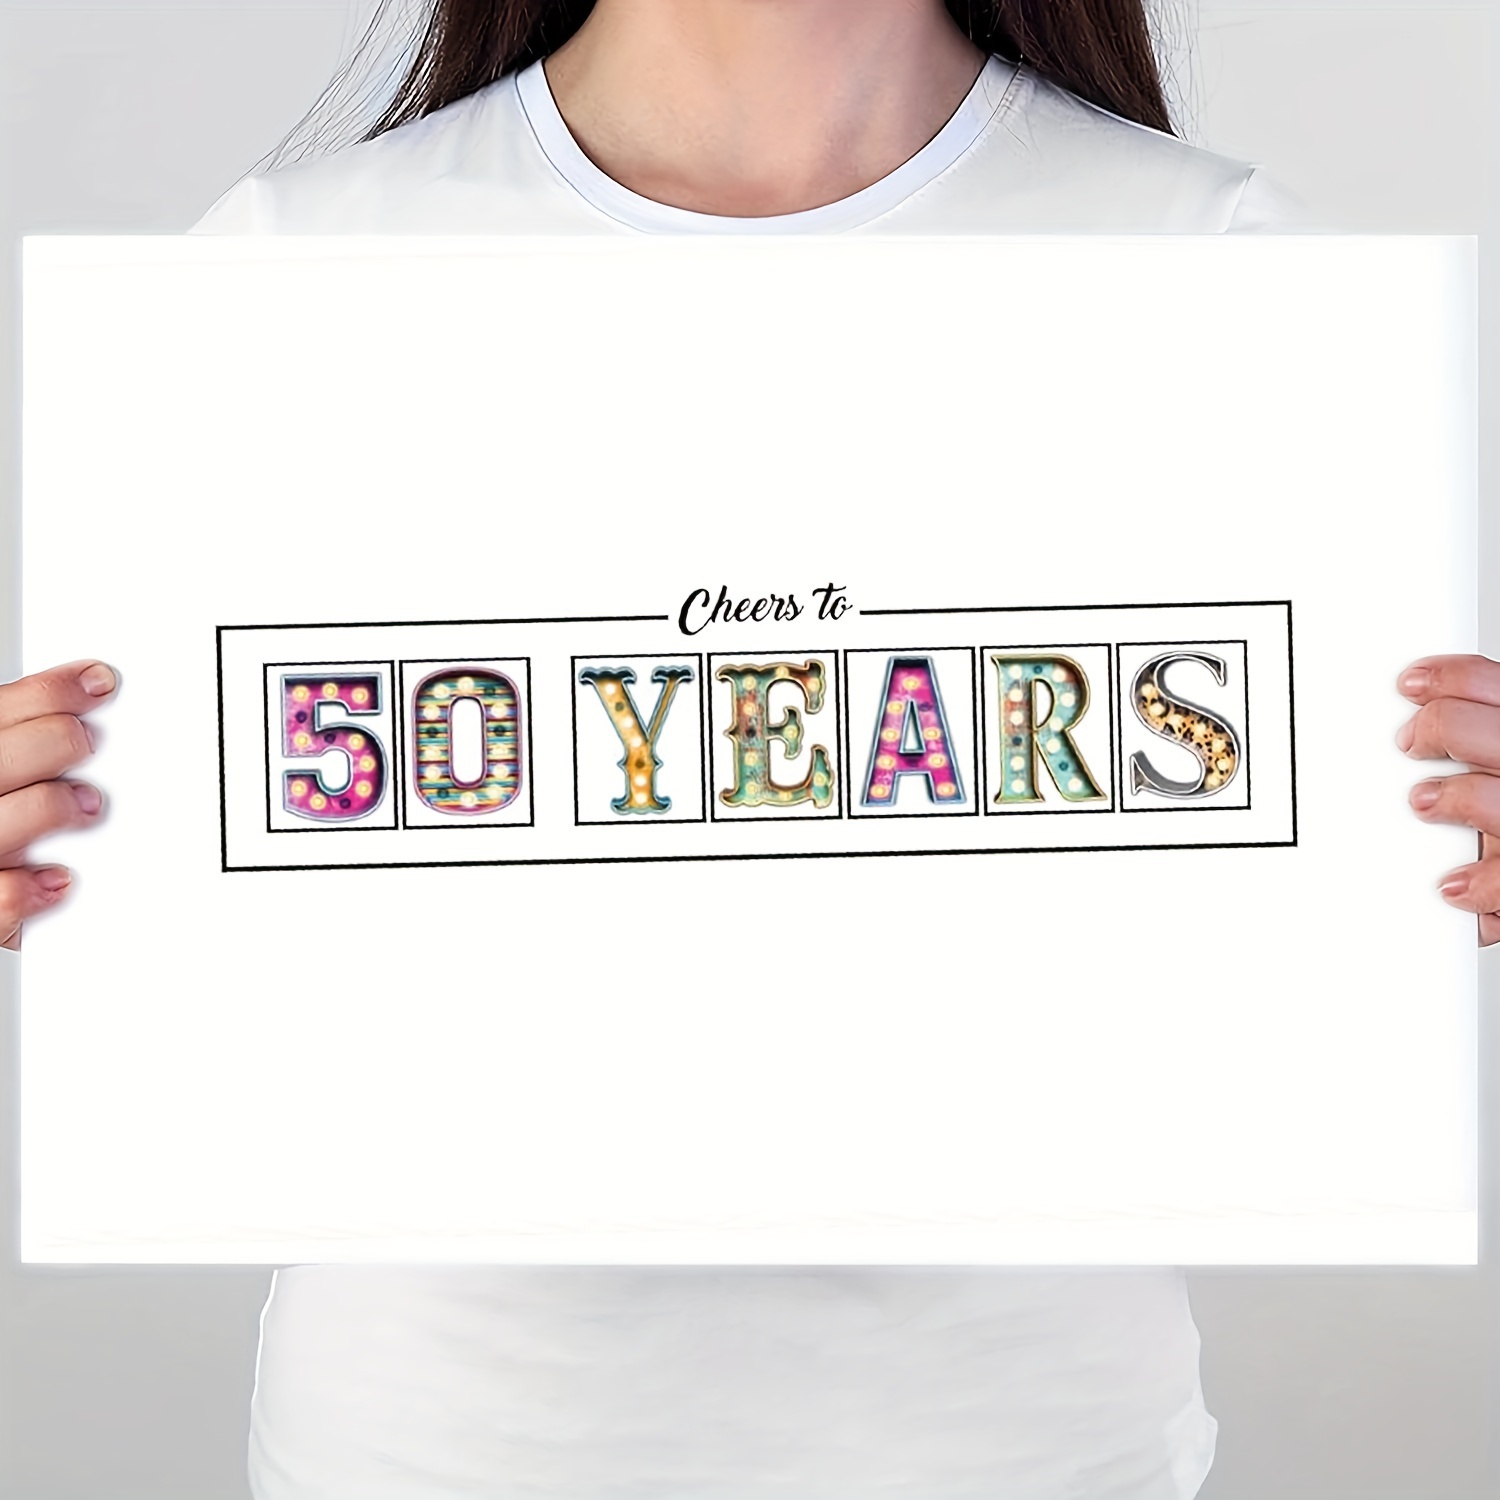 42 ideas de 50 años  decoración de unas, fiesta de cumpleaños de los 50,  decoracion 50 años